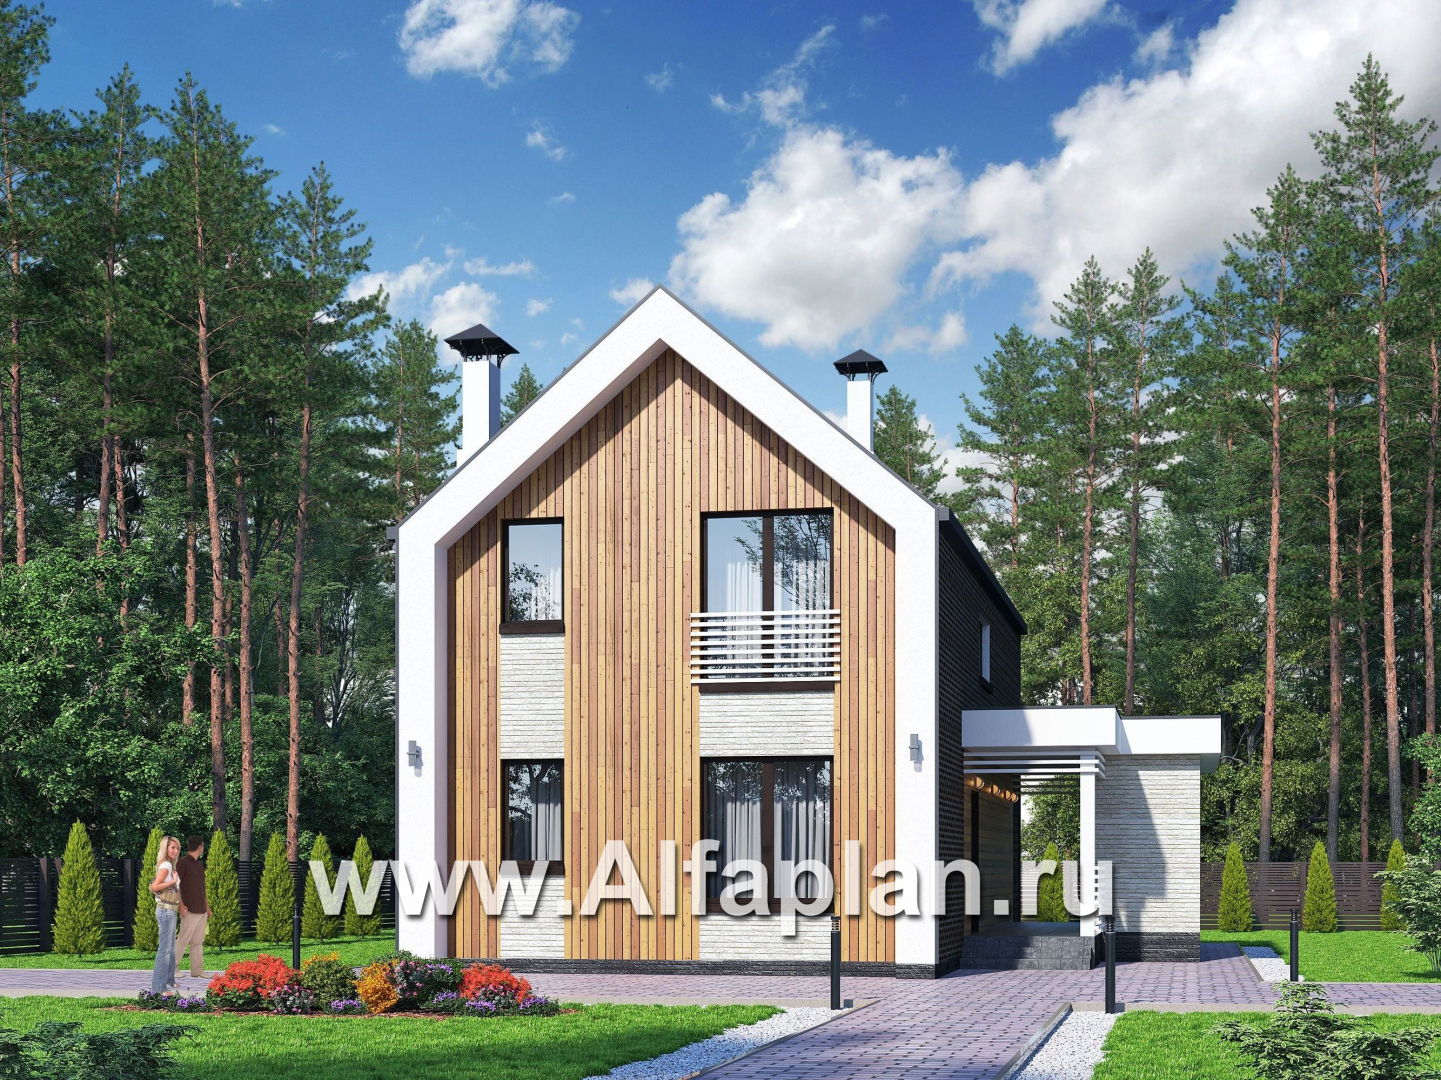 «Барн» - проект дома с мансардой, современный стиль барнхаус, с сауной, с террасой - дизайн дома №1